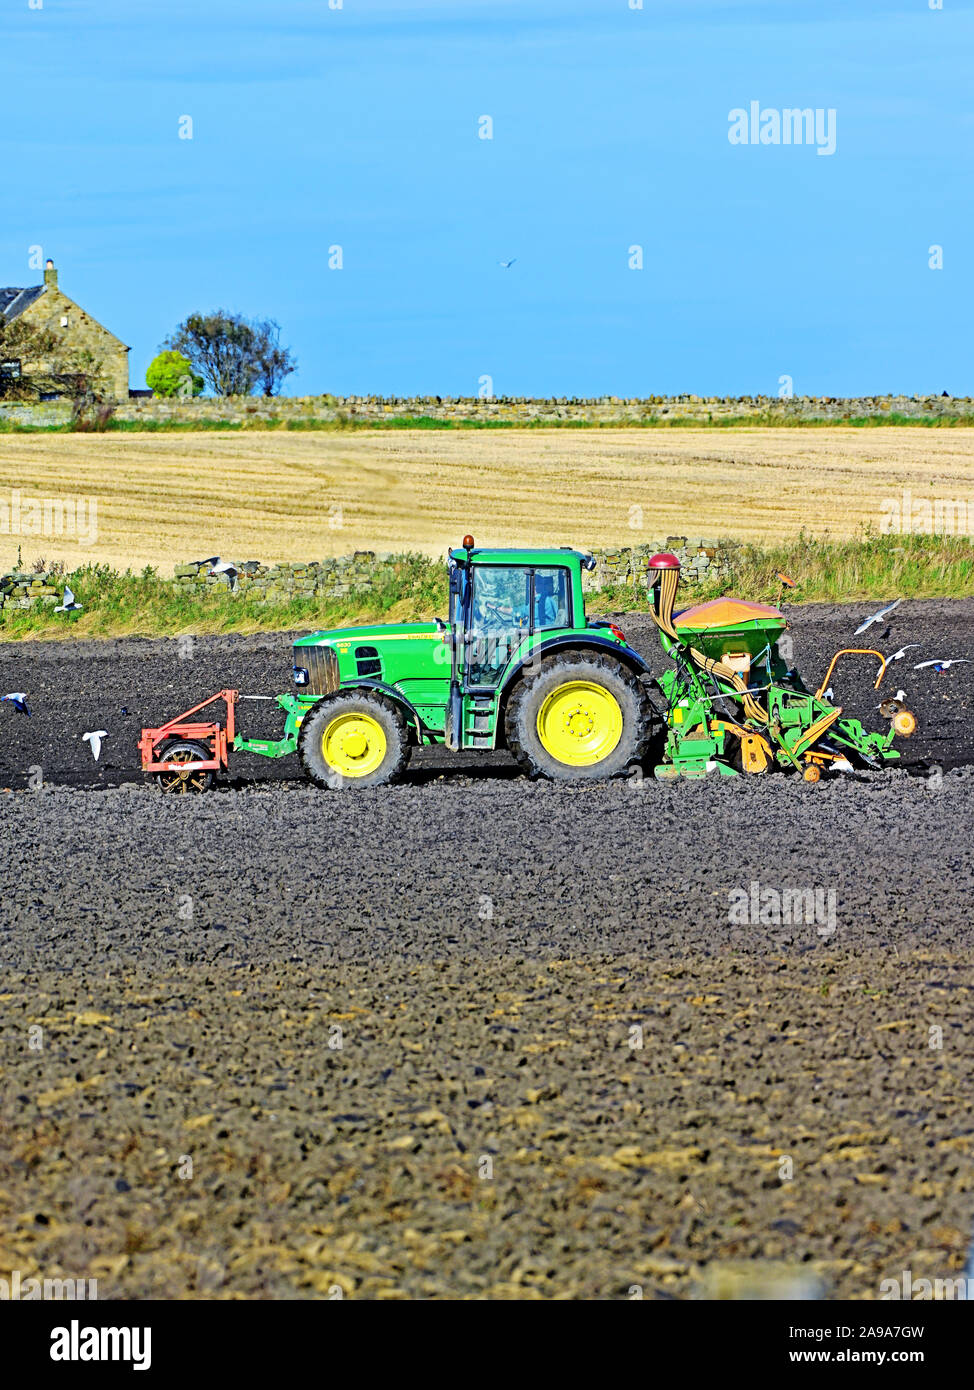 John Deere 6630 tractor tilling the autumn land Stock Photo